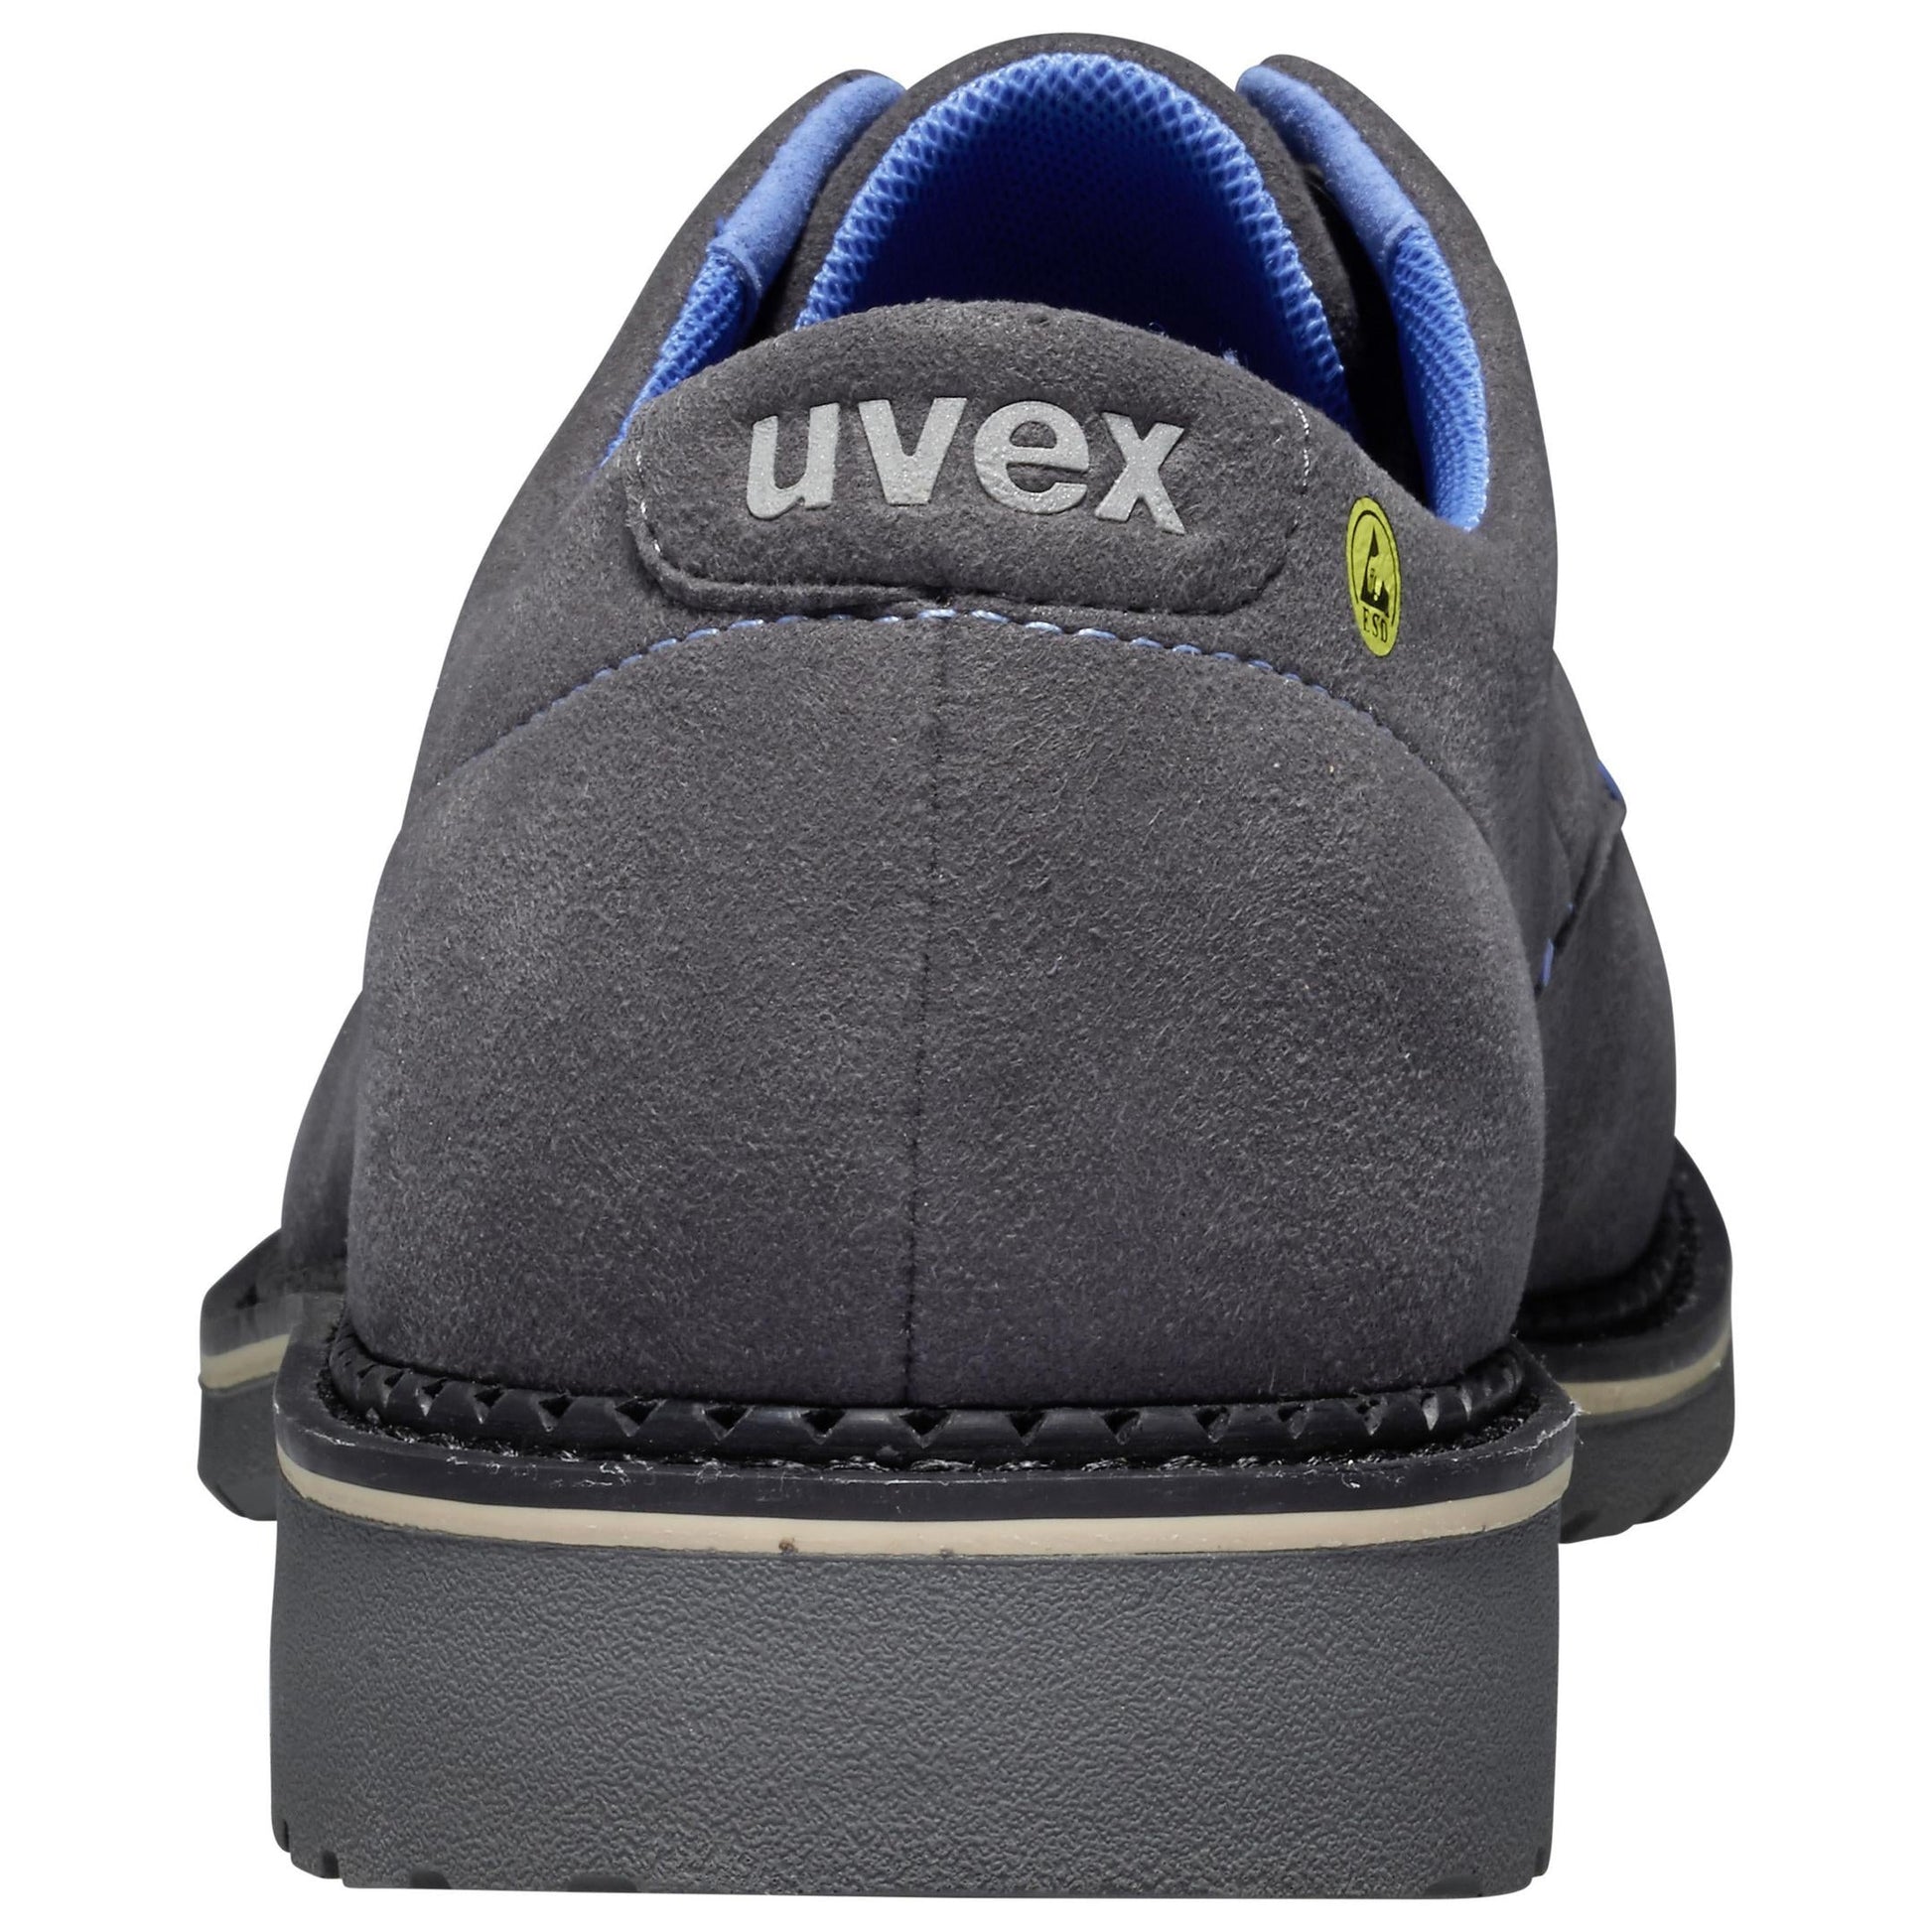 uvex 1 business Sicherheitsschuh S2 Halbschuh- sicher, stylisch, super bequem1